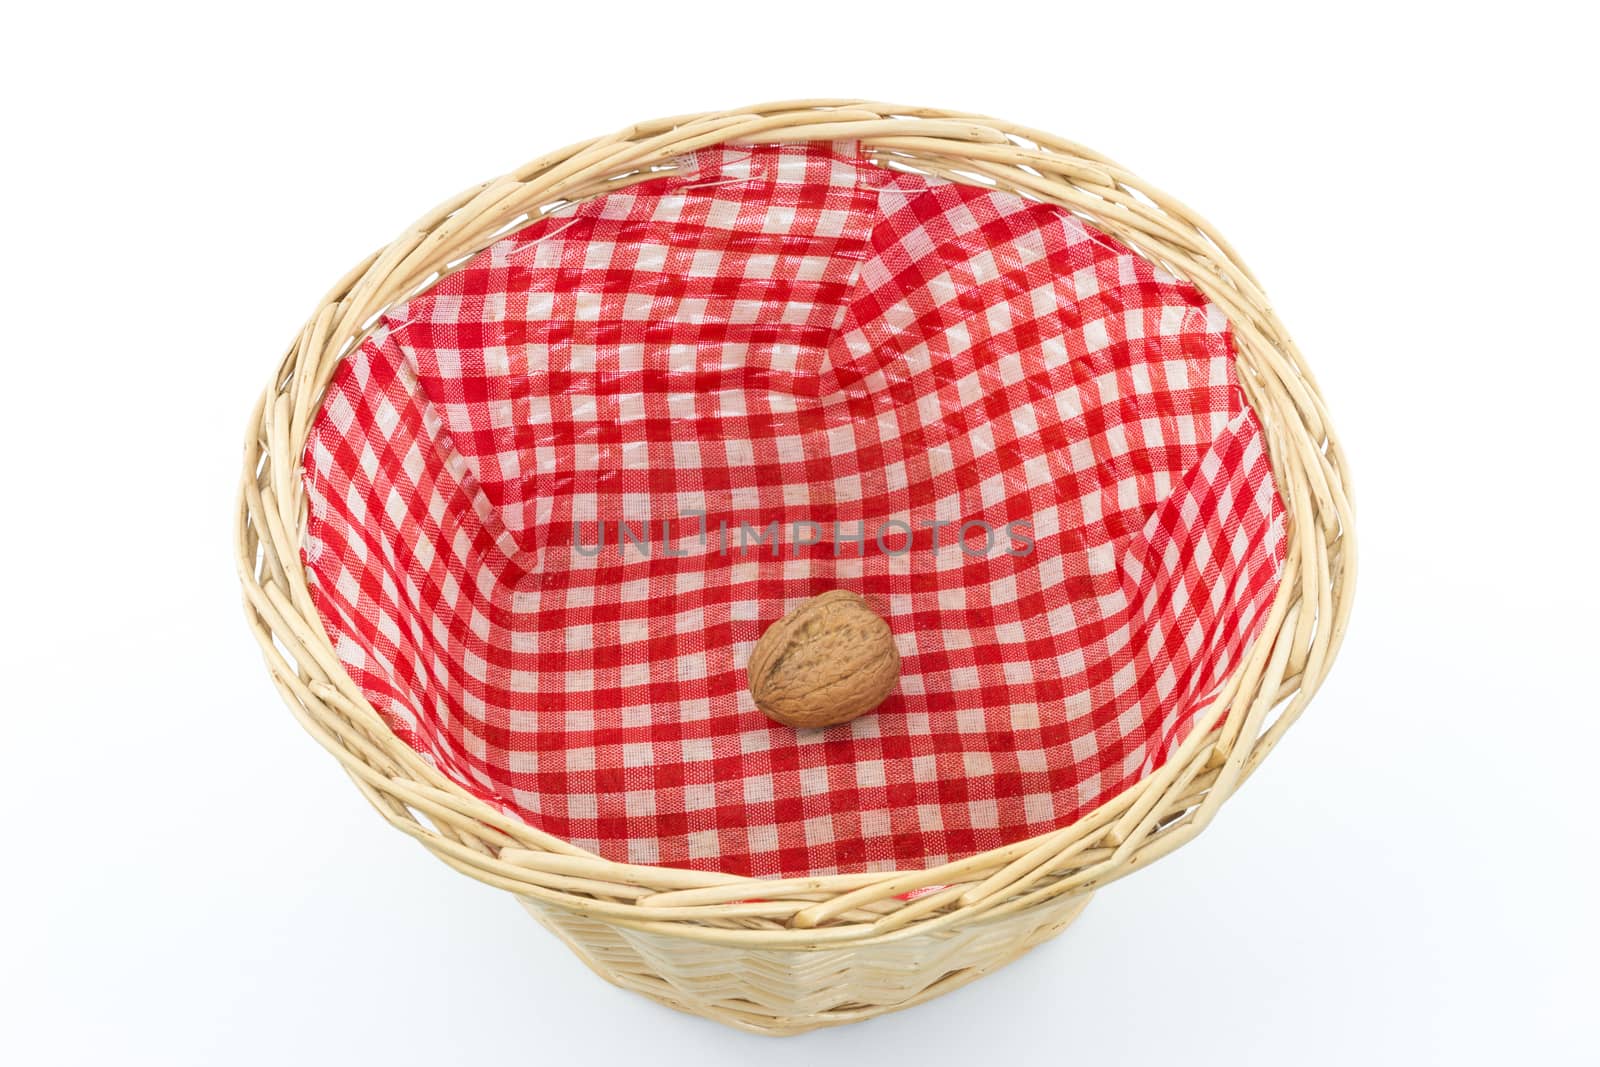 Basket with one single walnut by MarkDw